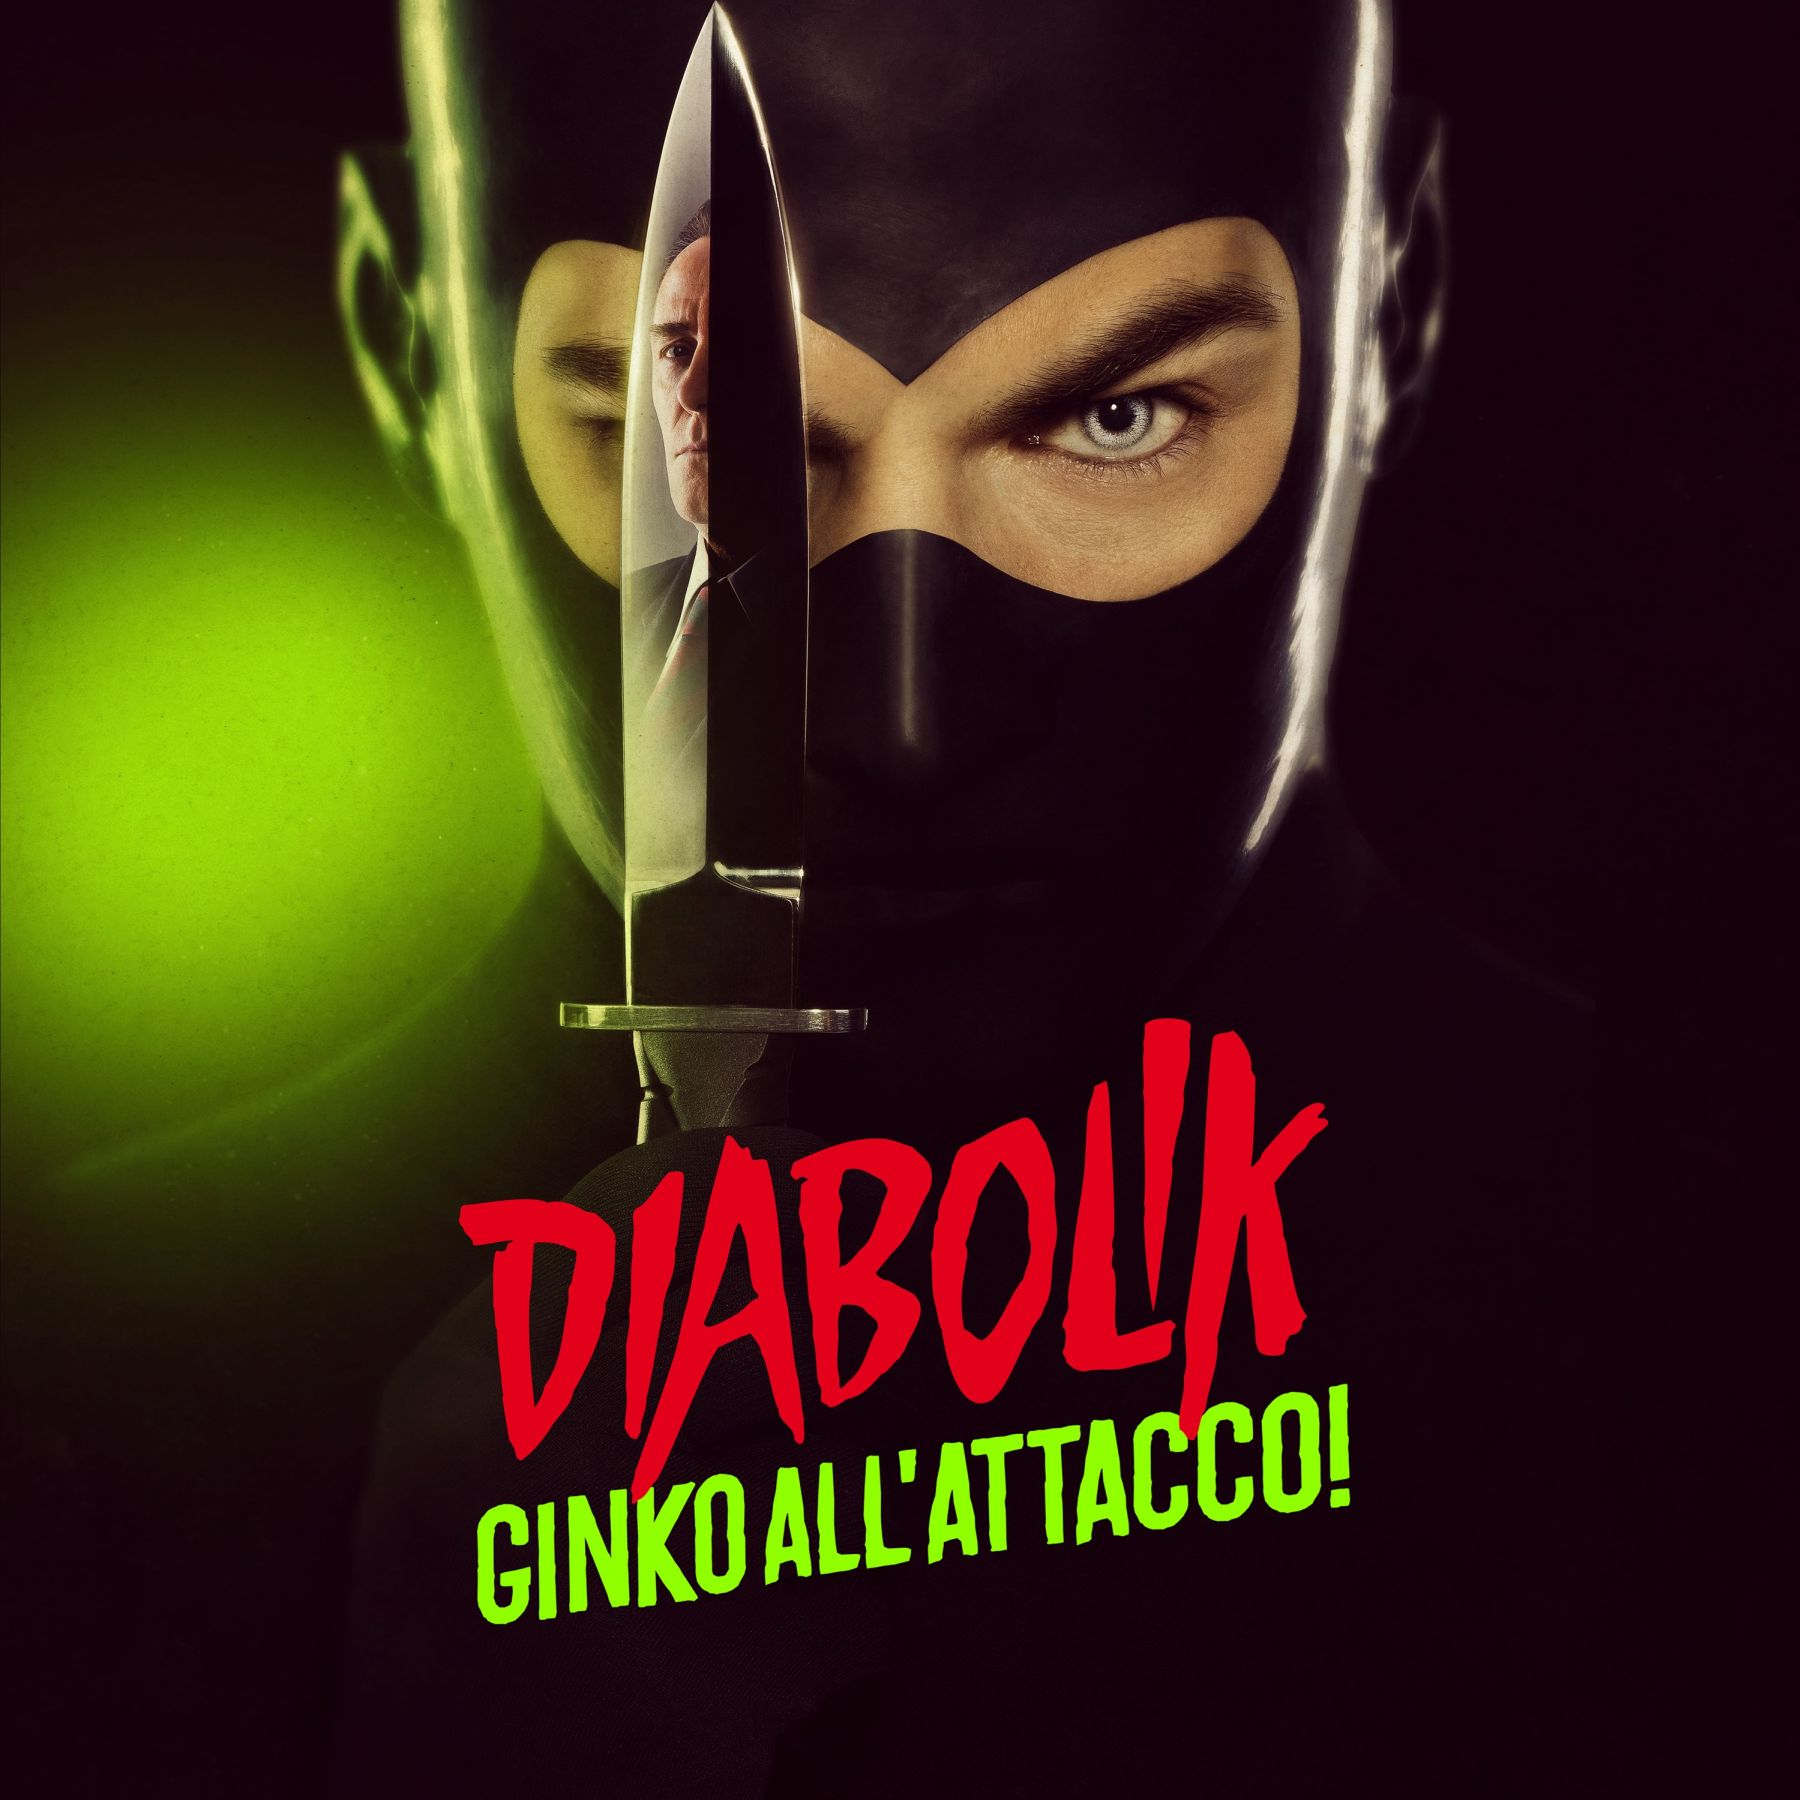 Da venerdì 18 novembre, è disponibile la versione digitale della soundtrack di Diabolik